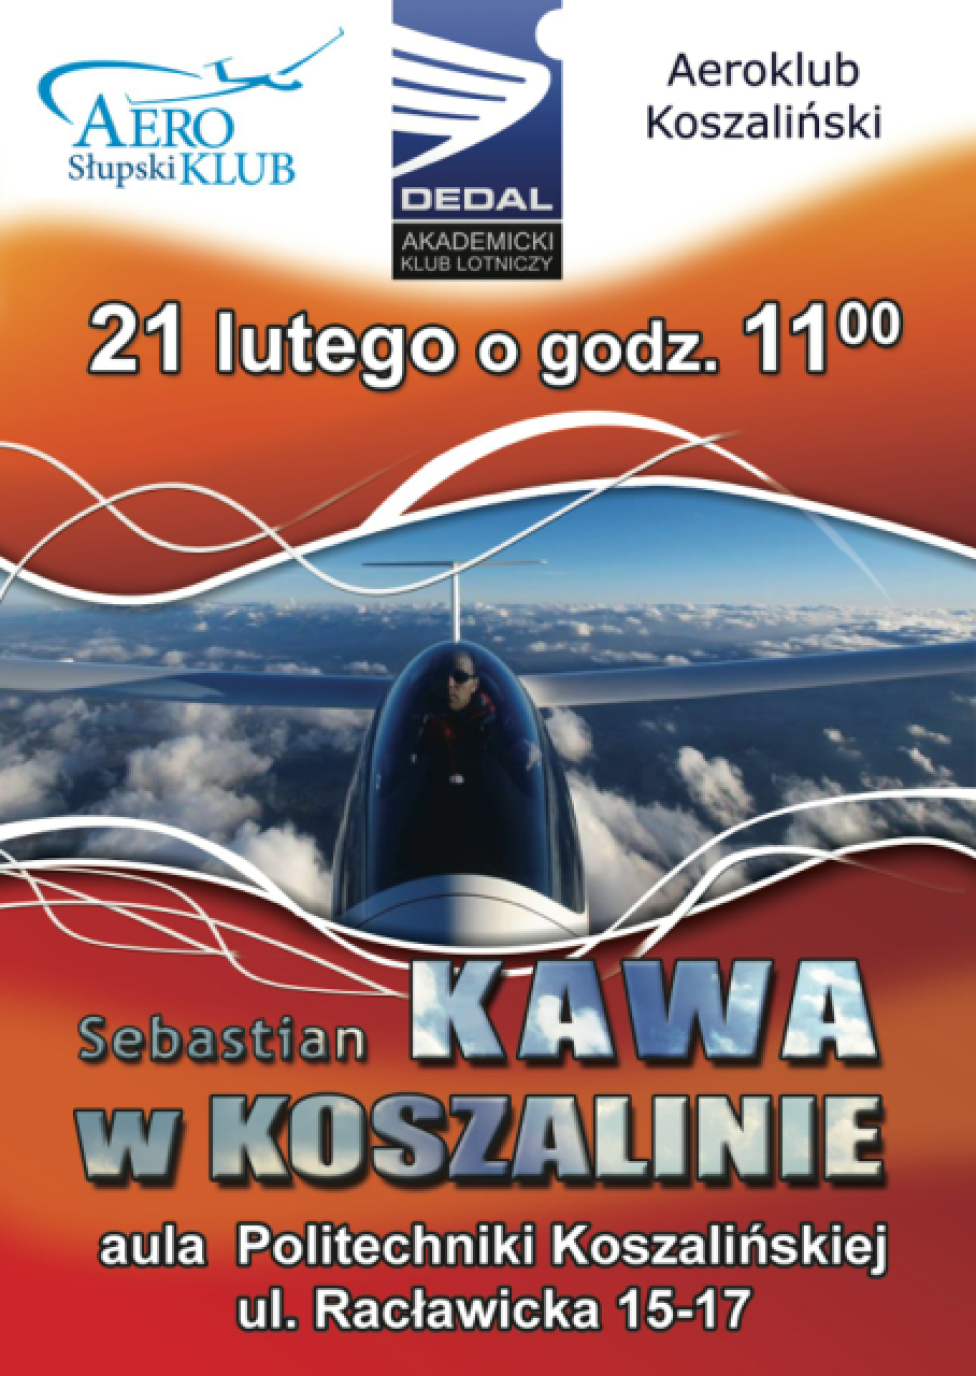 Spotkanie z Sebastianem Kawa w Aeroklubie Koszalińskim